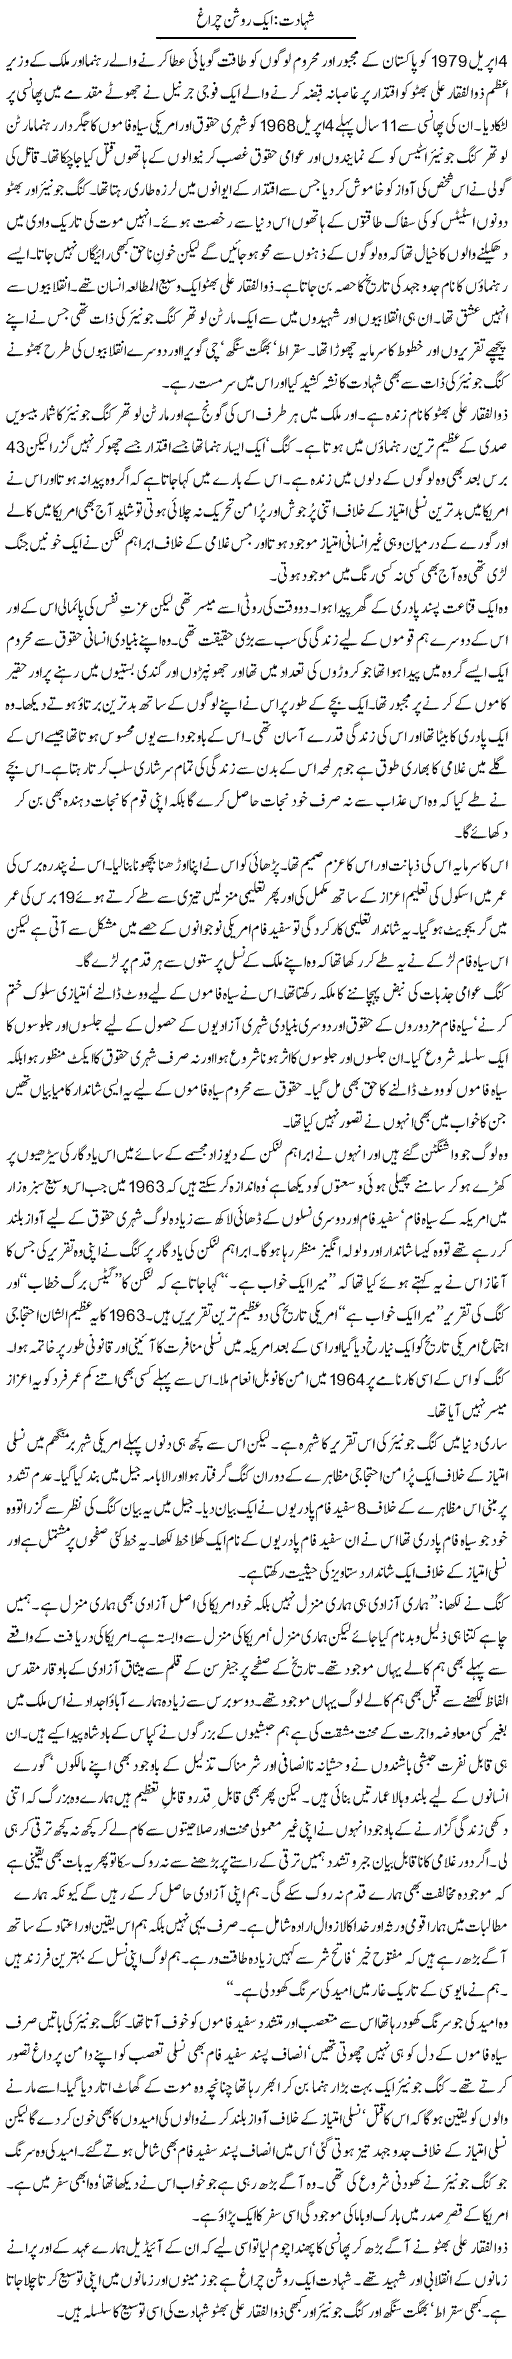 Bhutto Shaheed Express Column Zahida Hina 6 April 2011